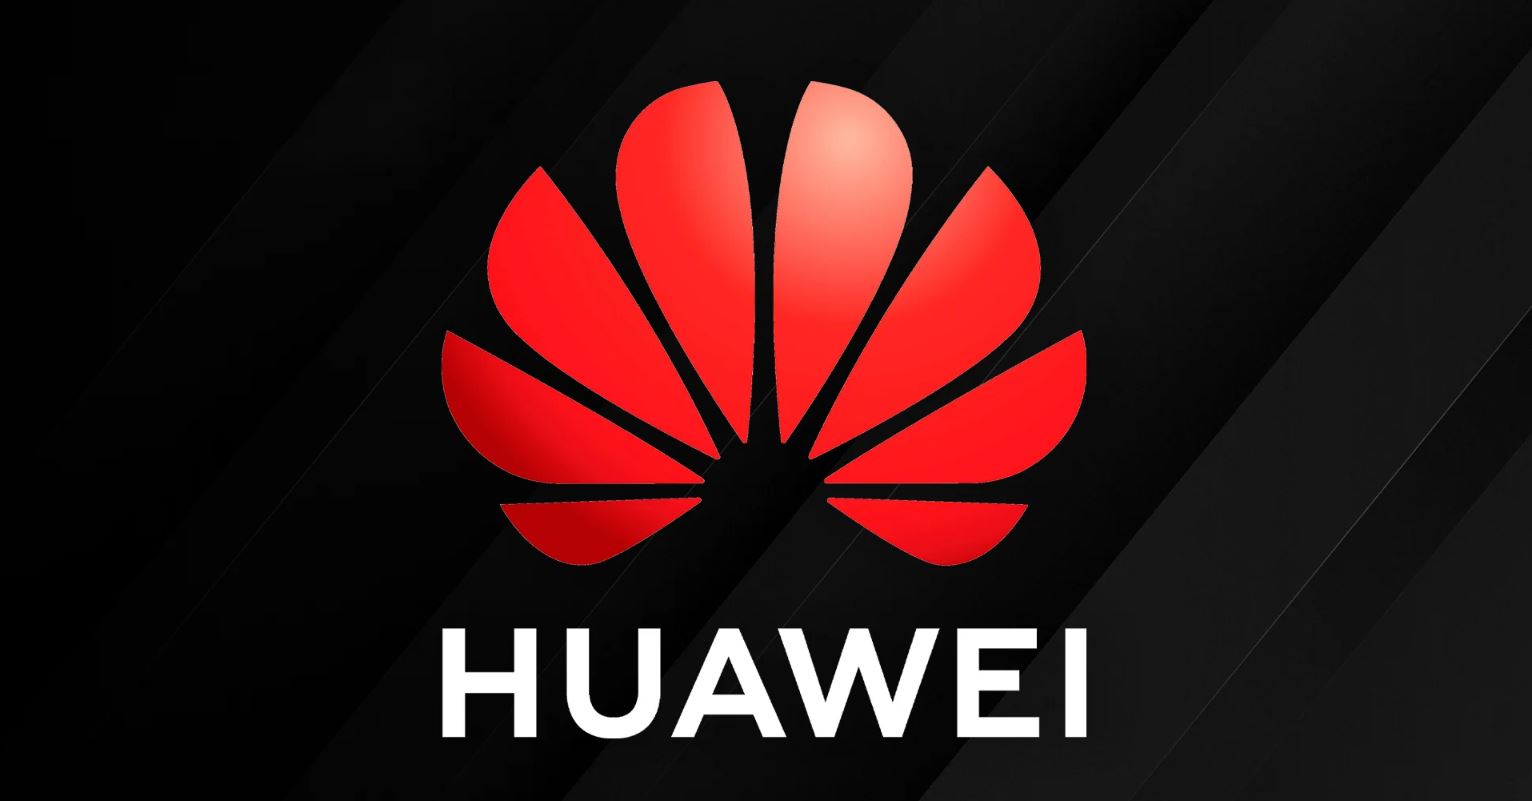 ตั้งแต่ถูกสหรัฐฯ คว่ำบาตร รายได้ Huawei ยังคงลดลงต่อเนื่องจนถึงปัจจุบัน!